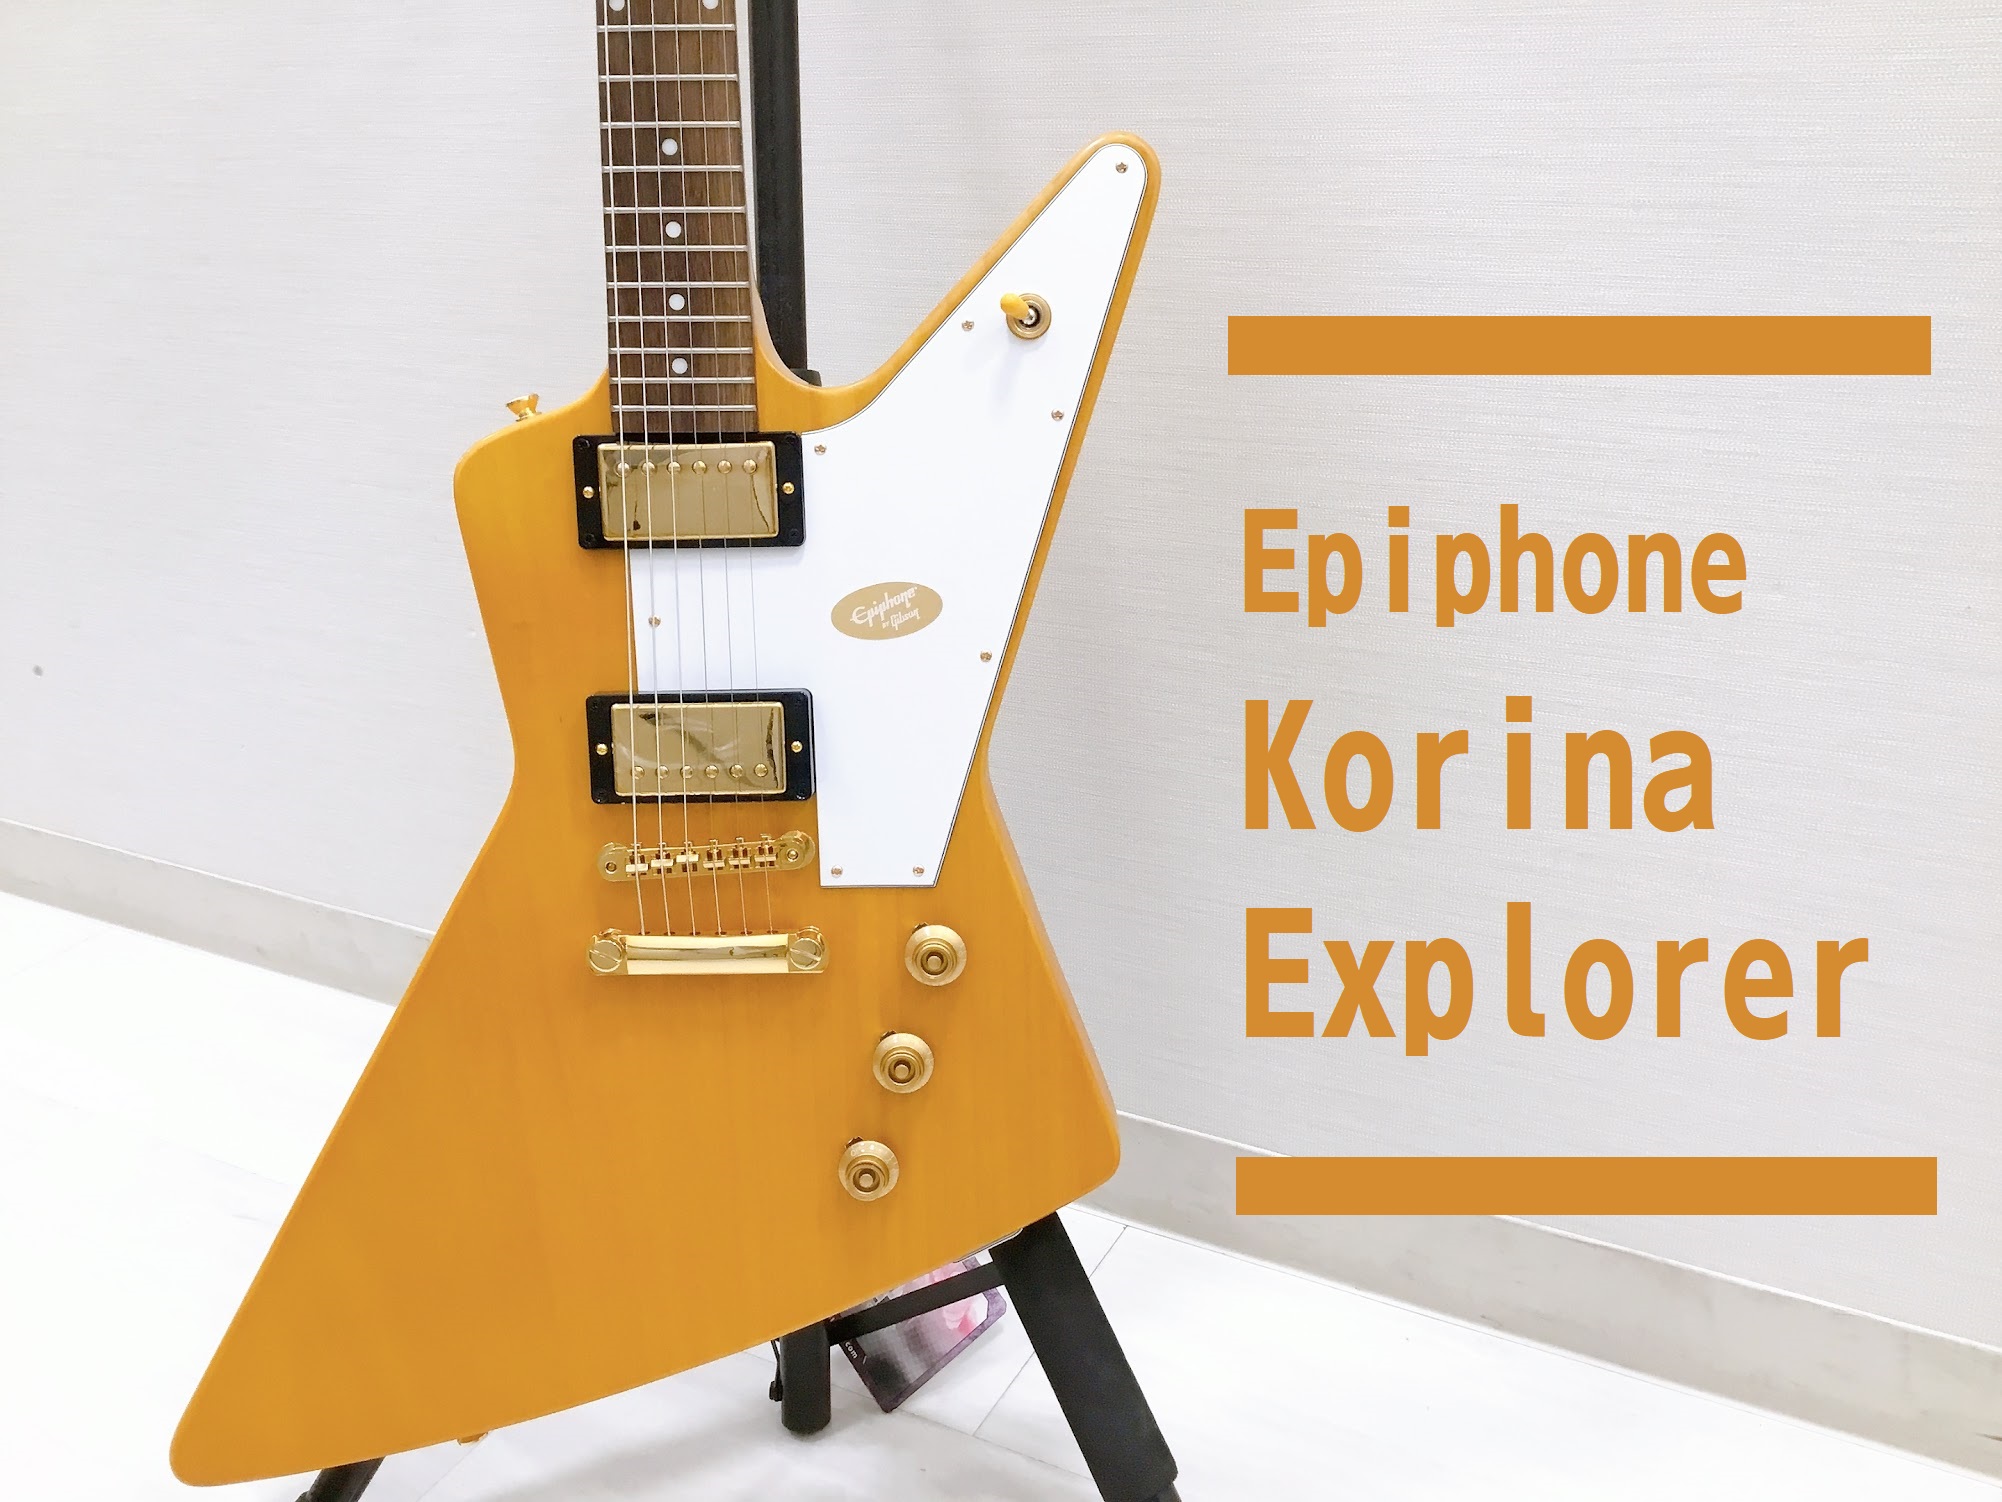 島村楽器大分店に、Epiphone(エピフォン)のエレキギター「Korina Explorer Aged Natural」が入荷致しました！ 1958年当時の超レアなギブソン・オリジナルモデルと同様に、コリーナ・ボディとコリーナ・ネック、ボディとネックの強固な接合を実現するロング・ネックテノン等、特 […]